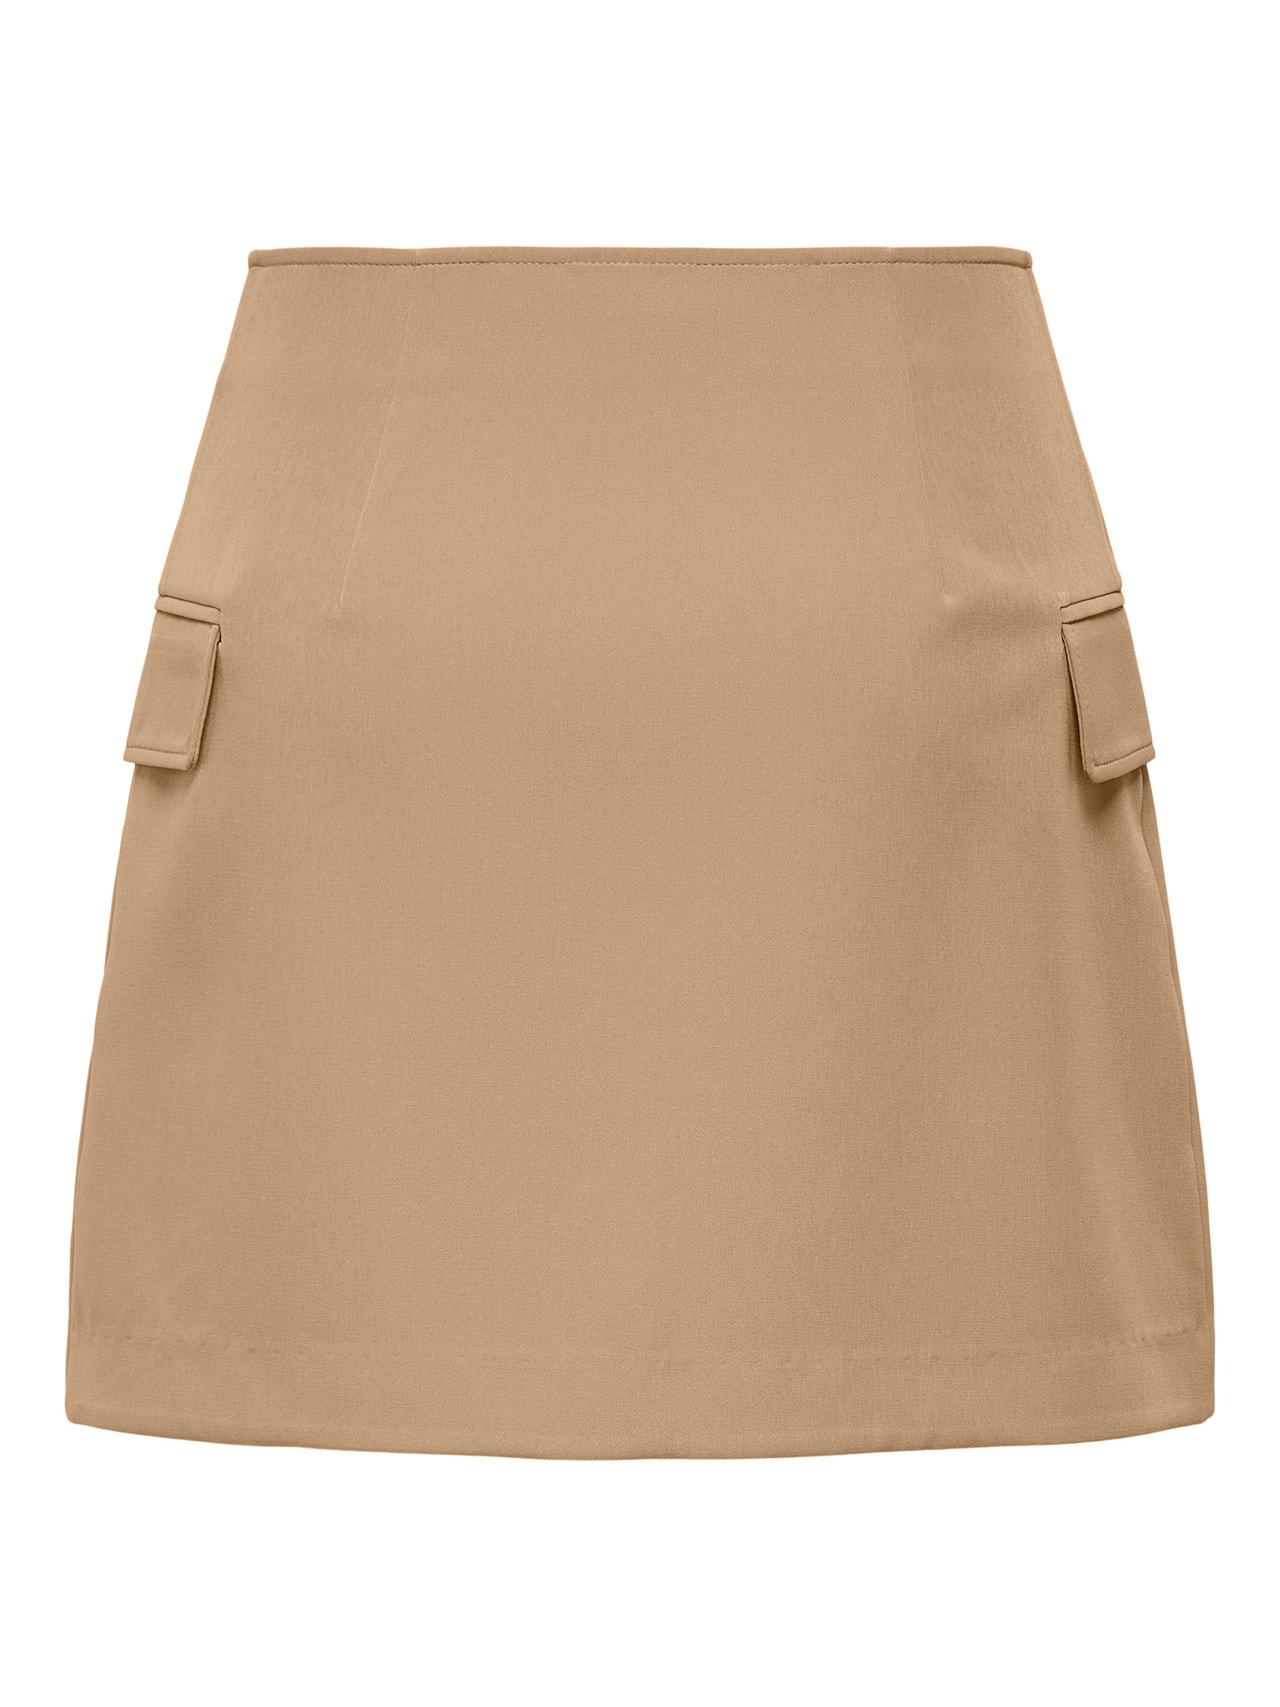 ONLY Highwaisted short Skirt -Amphora - 15245218